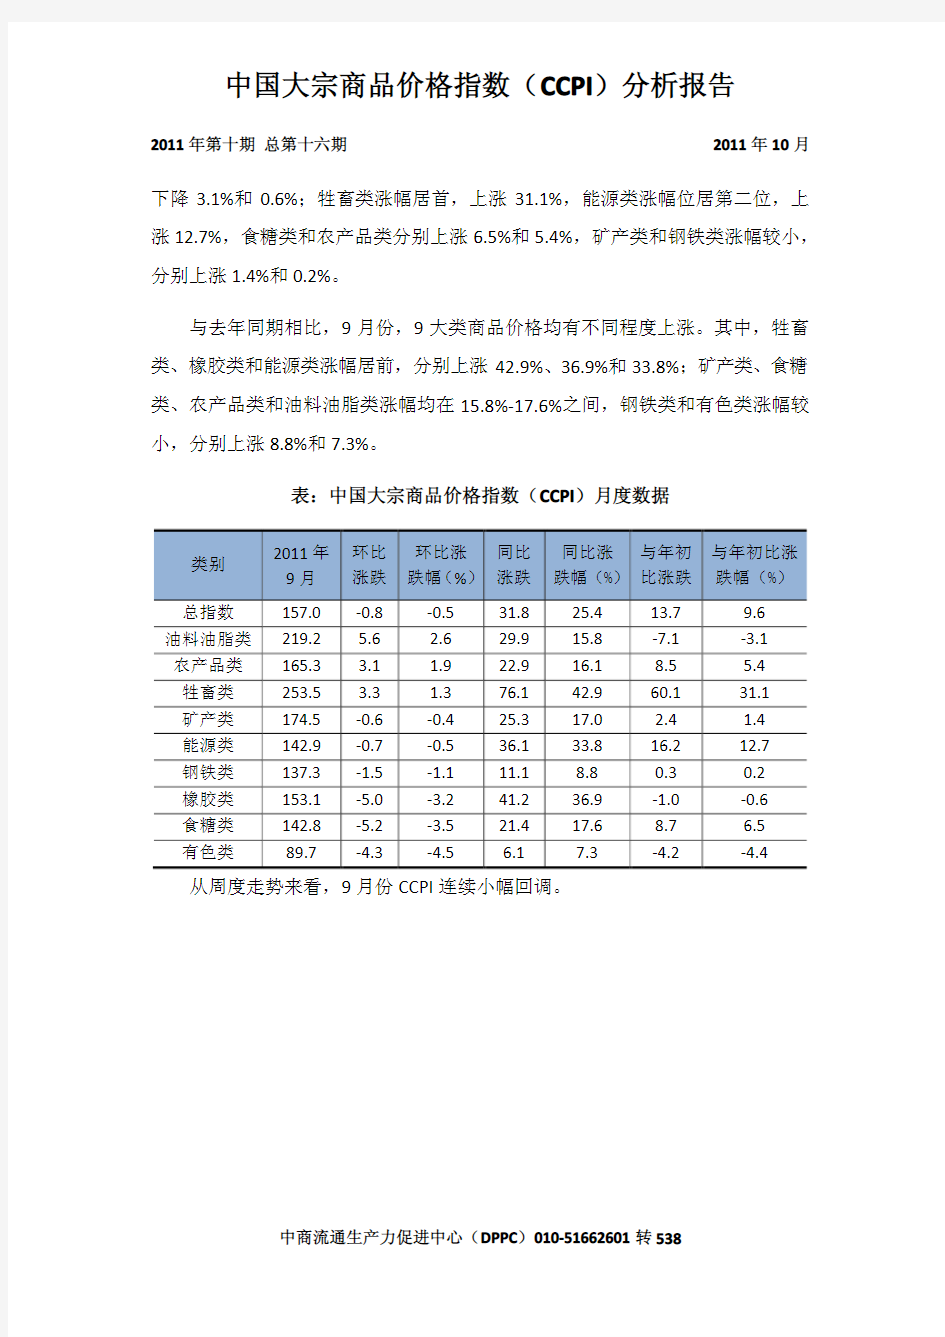 9月份中国大宗商品价格指数(CCPI)分析报告